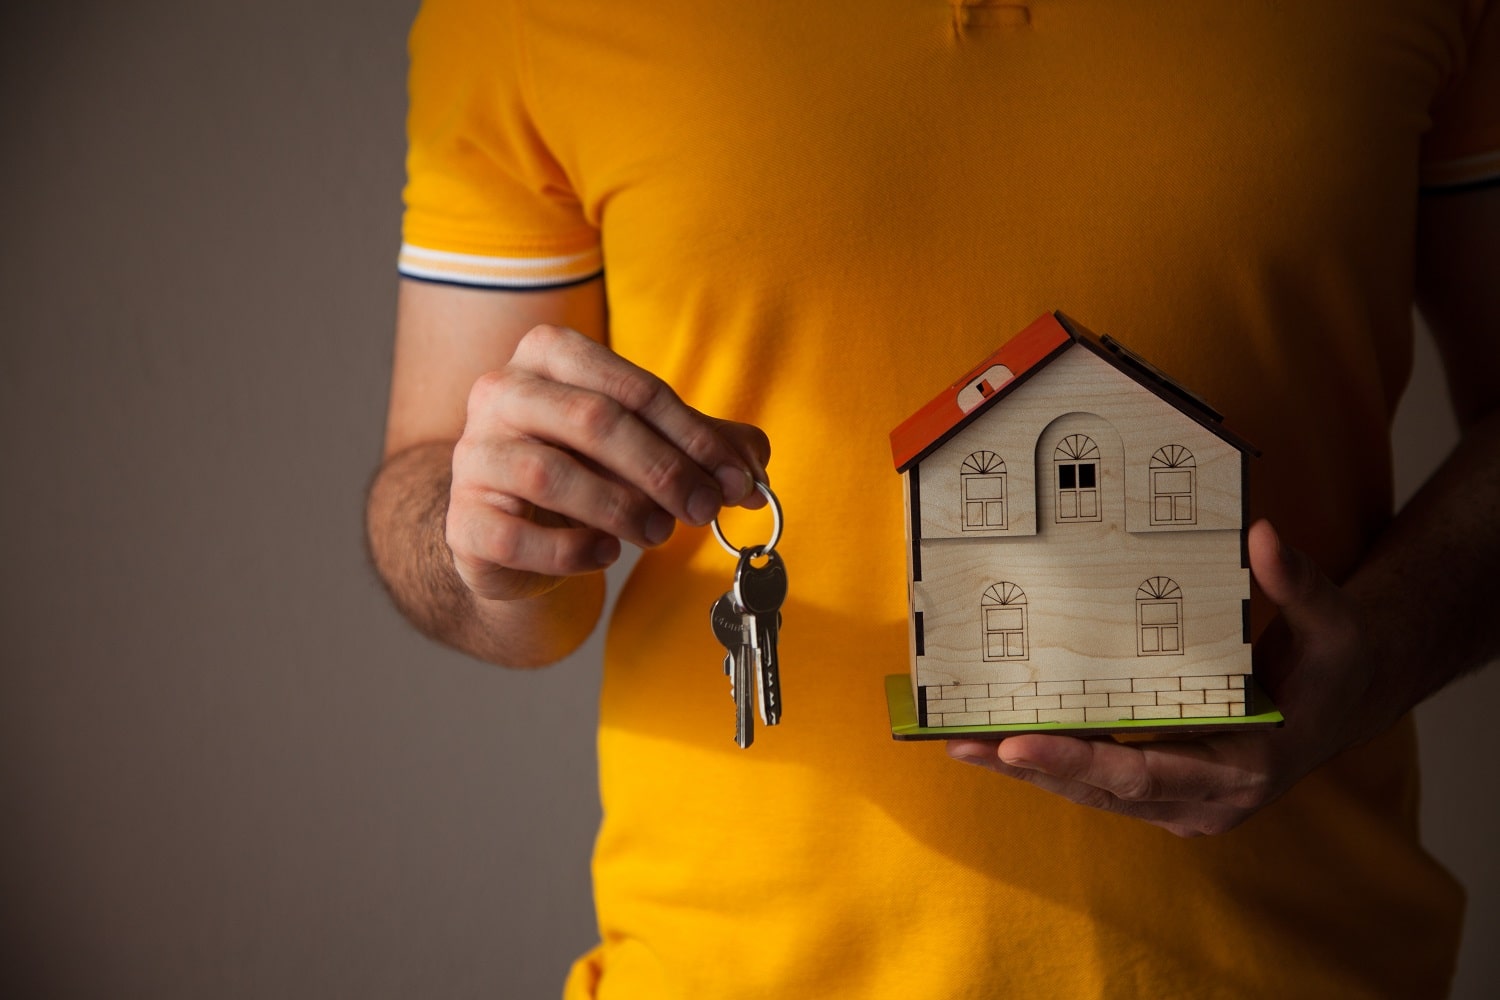 Acheter une maison pour la louer : rentable ou pas ?